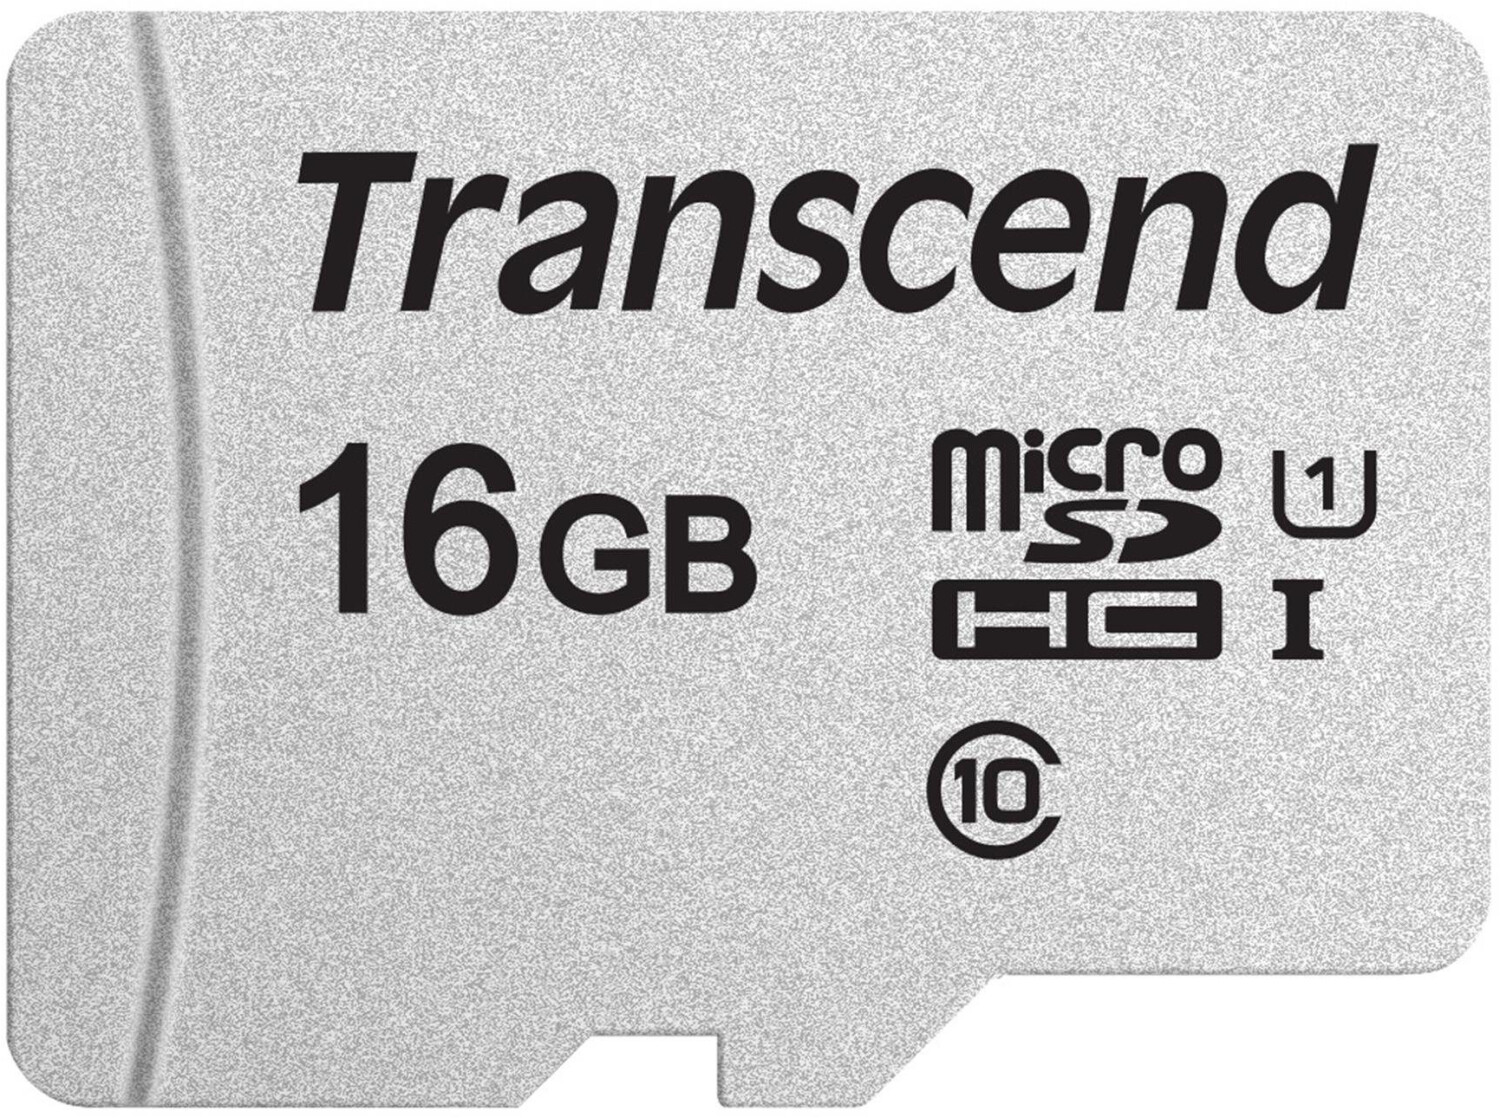 Tarjeta MicroSD Kingston UHS-I10 64GB SDXC 45MB/s